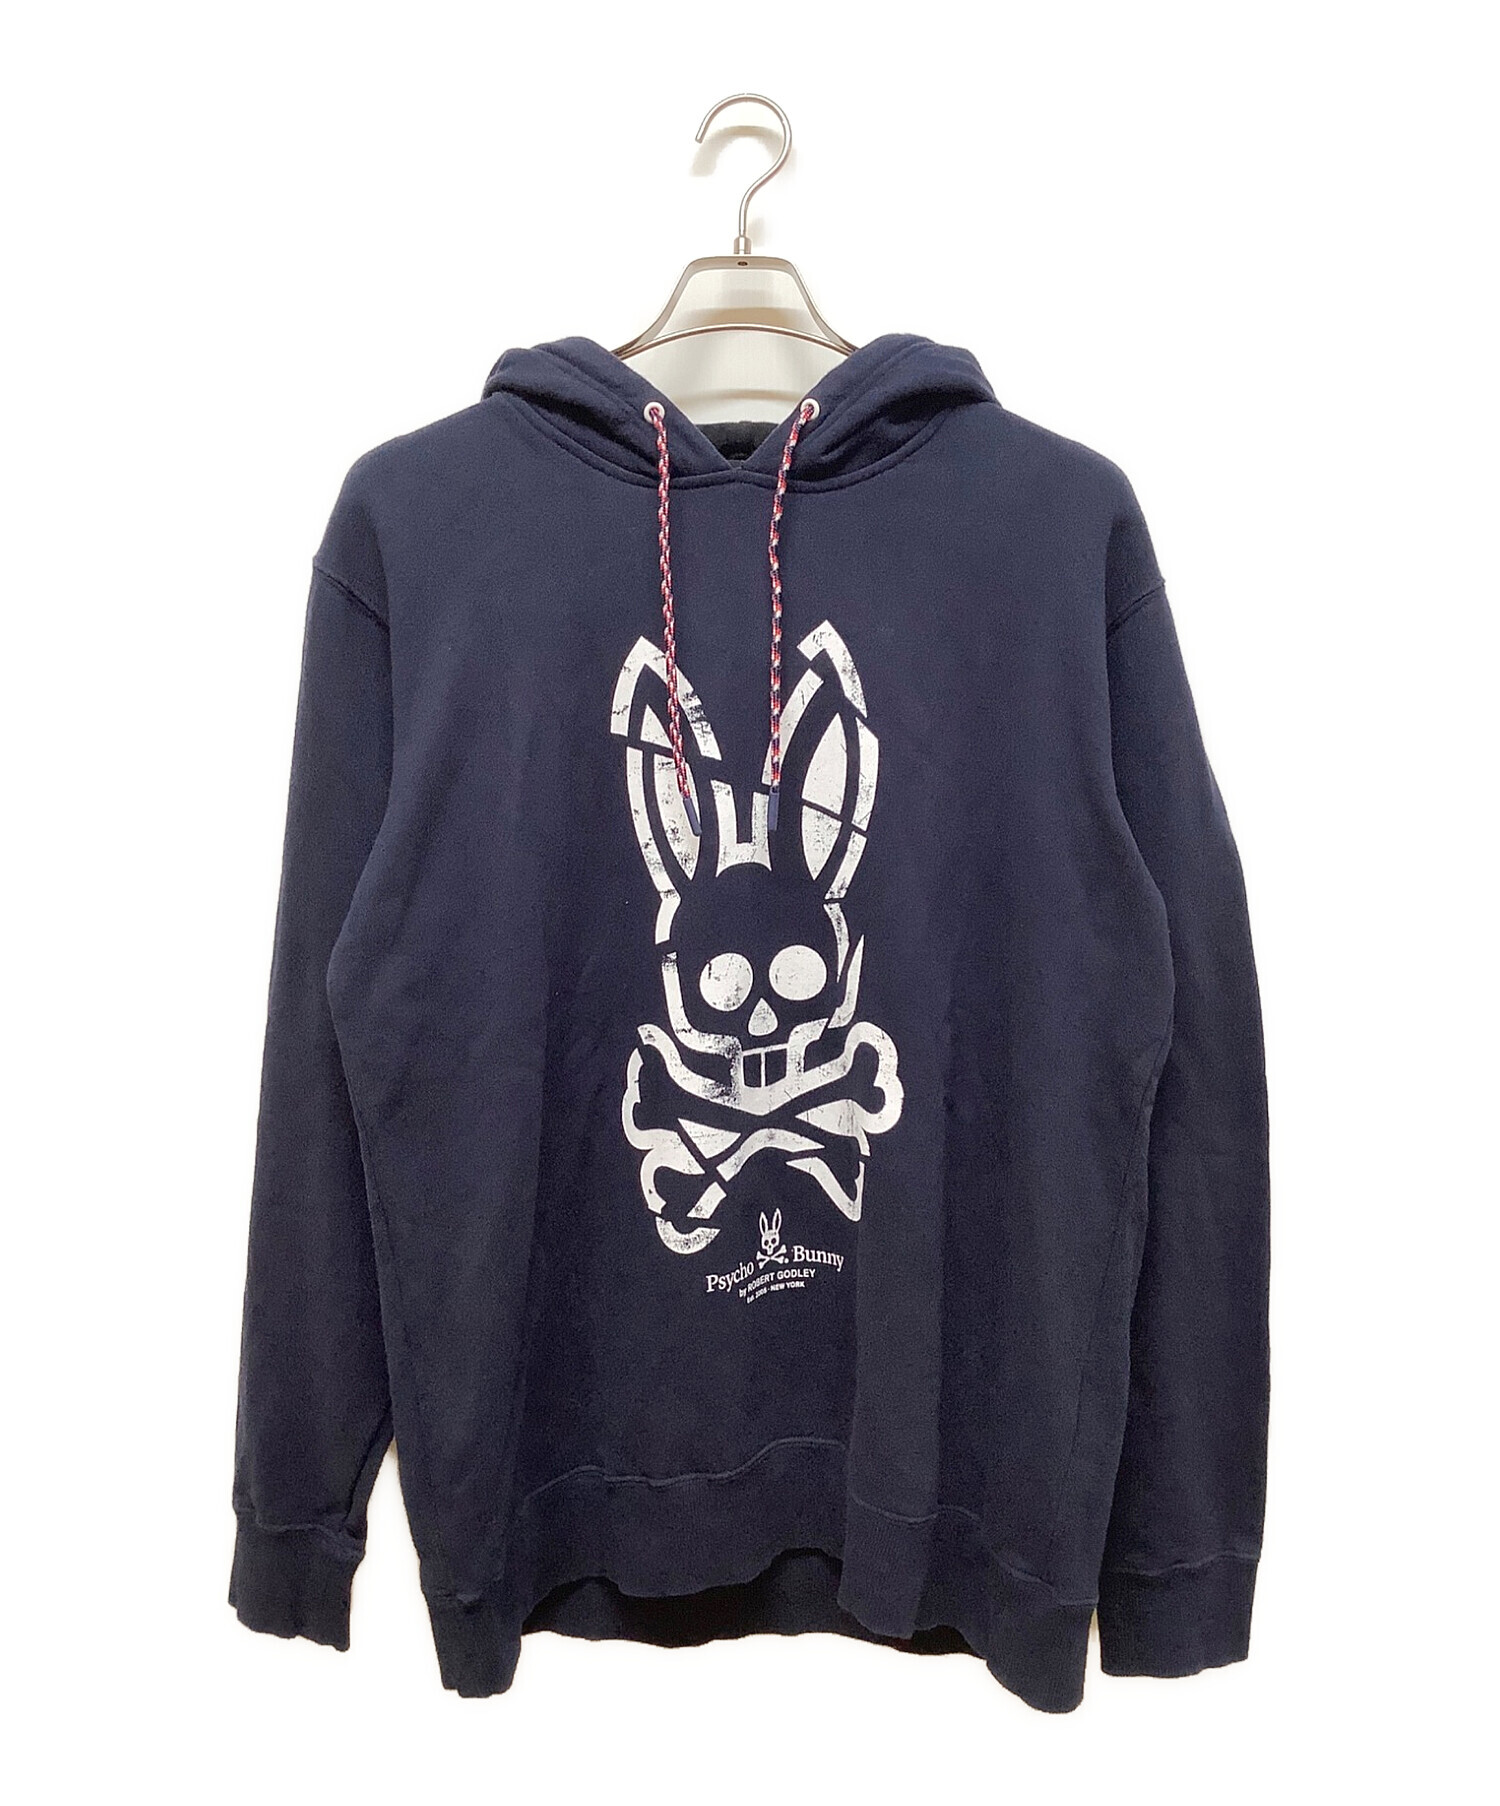 Psycho Bunny (サイコ バニー) プルオーバーパーカー ネイビー サイズ:XL